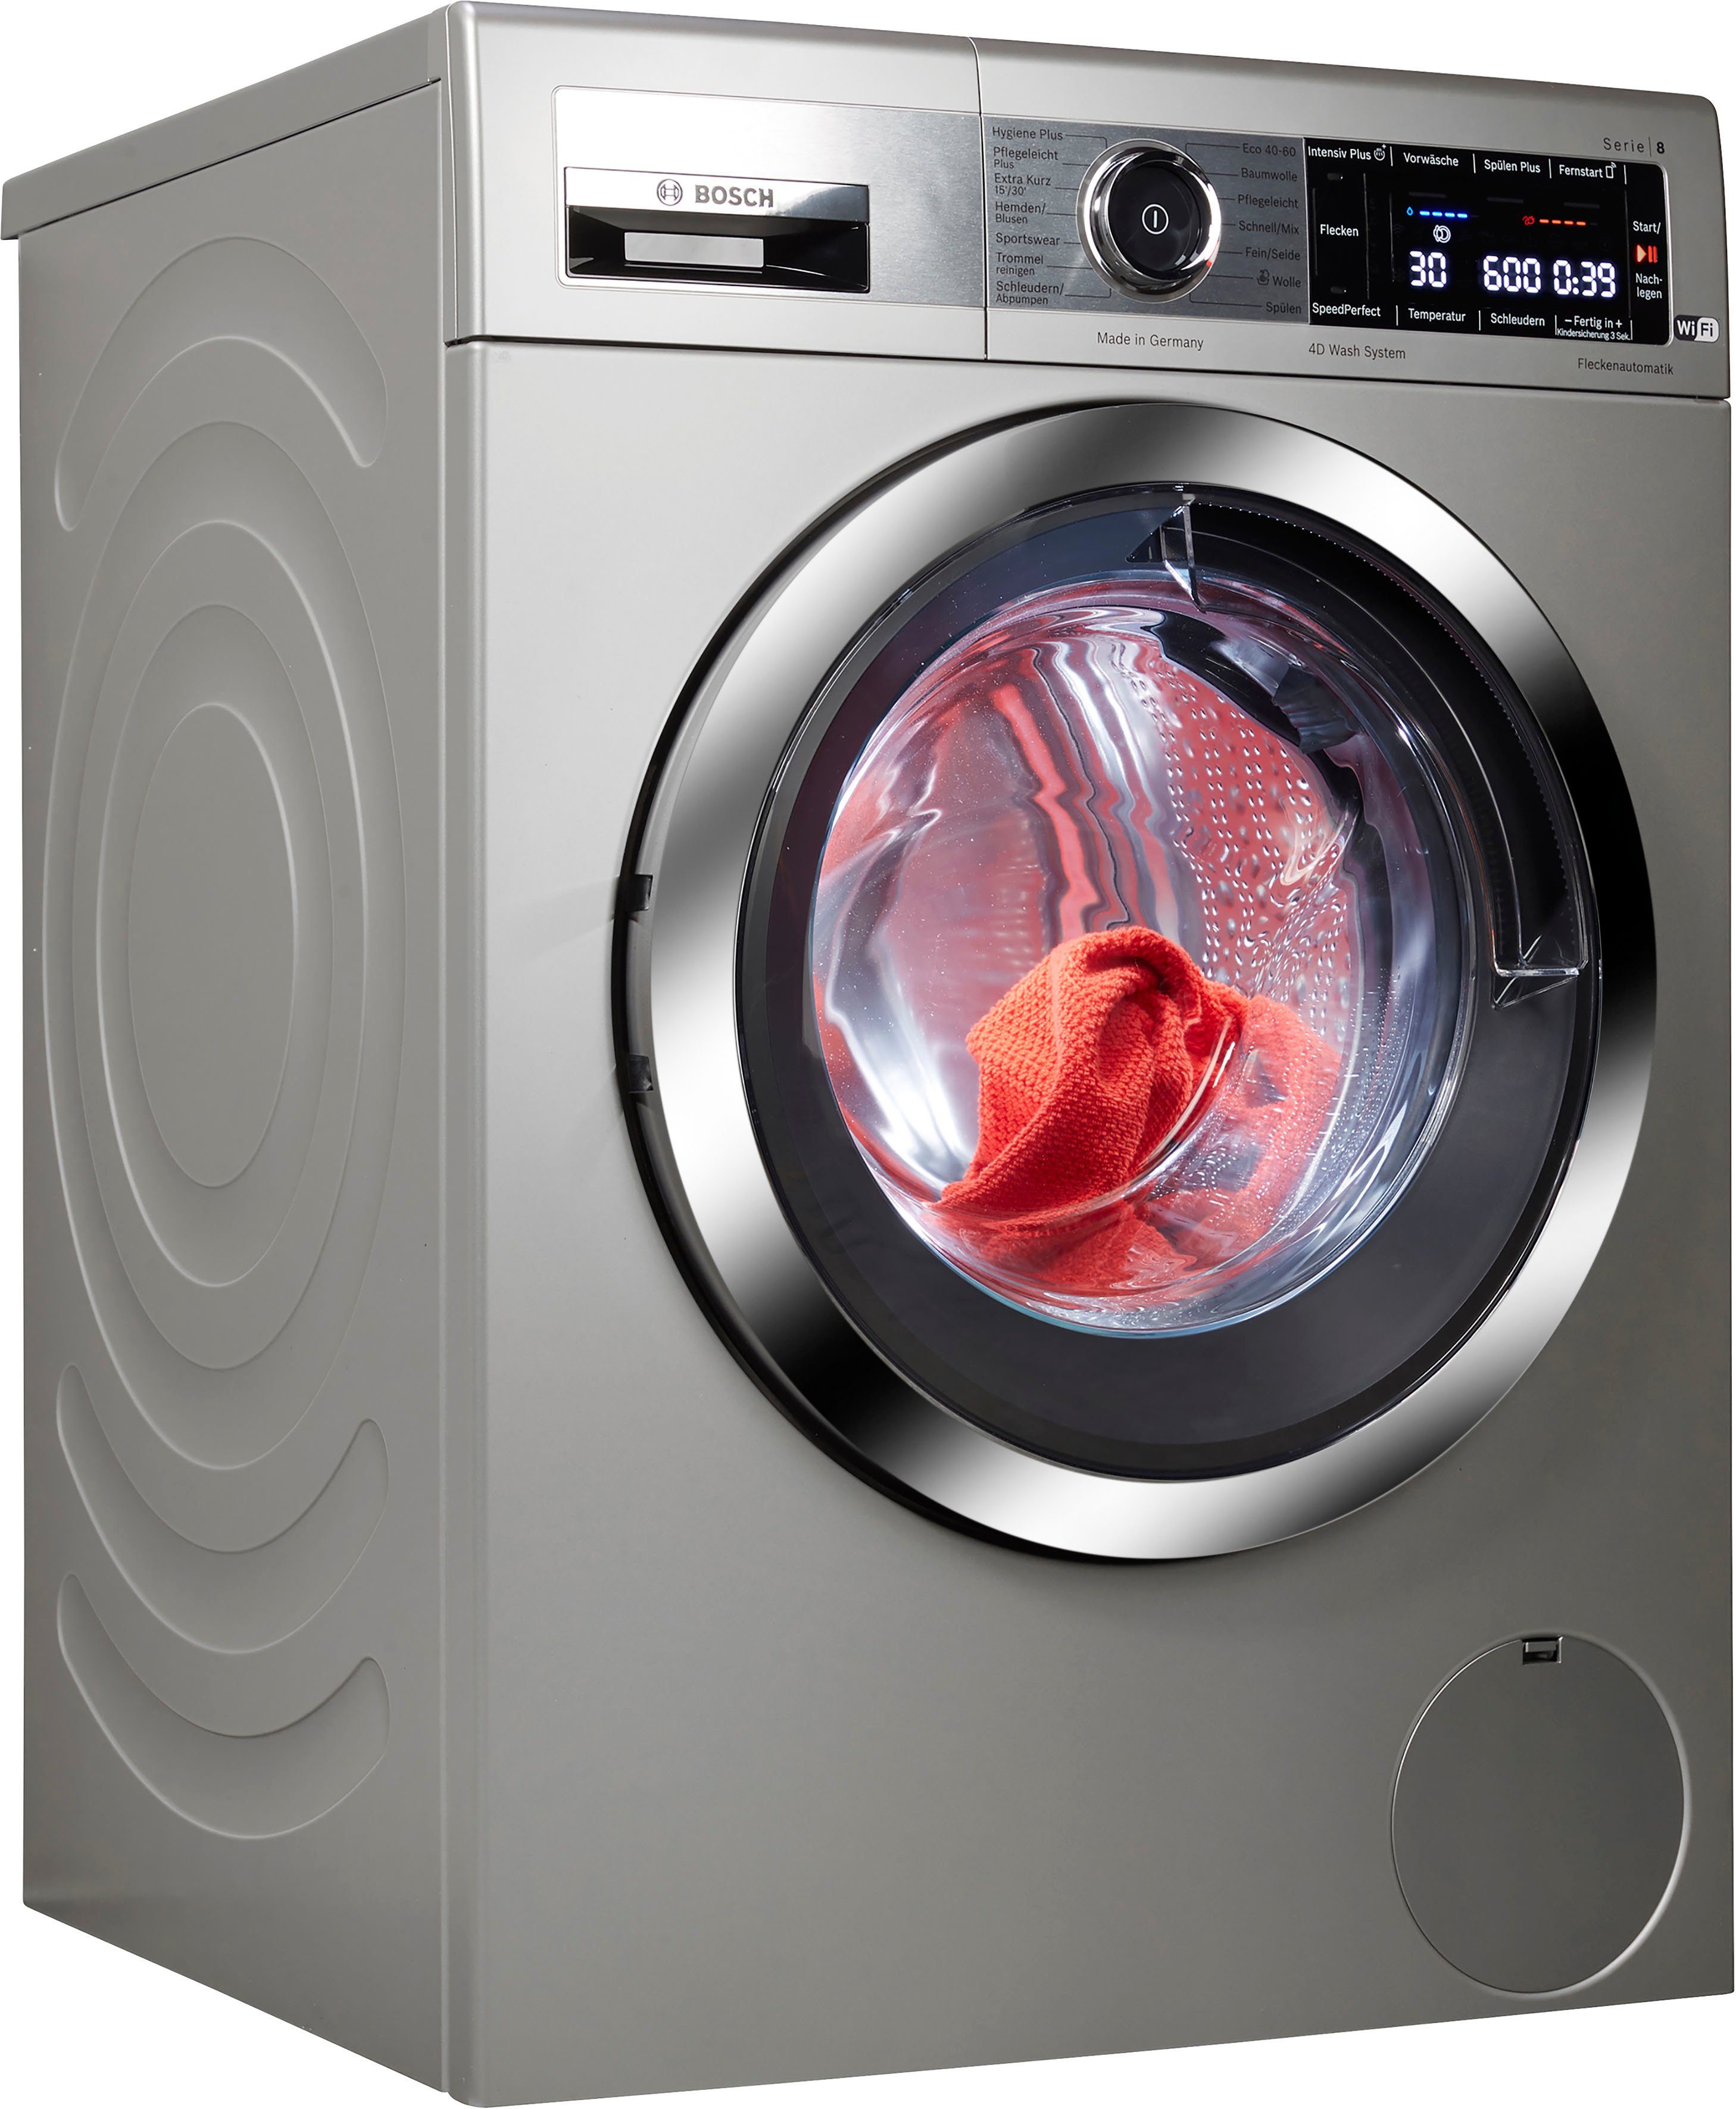 BOSCH Waschmaschine WAX32MX2, 10 kg, 1600 U/min, Fleckenautomatik: entfernt  die 4 gängigsten Fleckenarten.